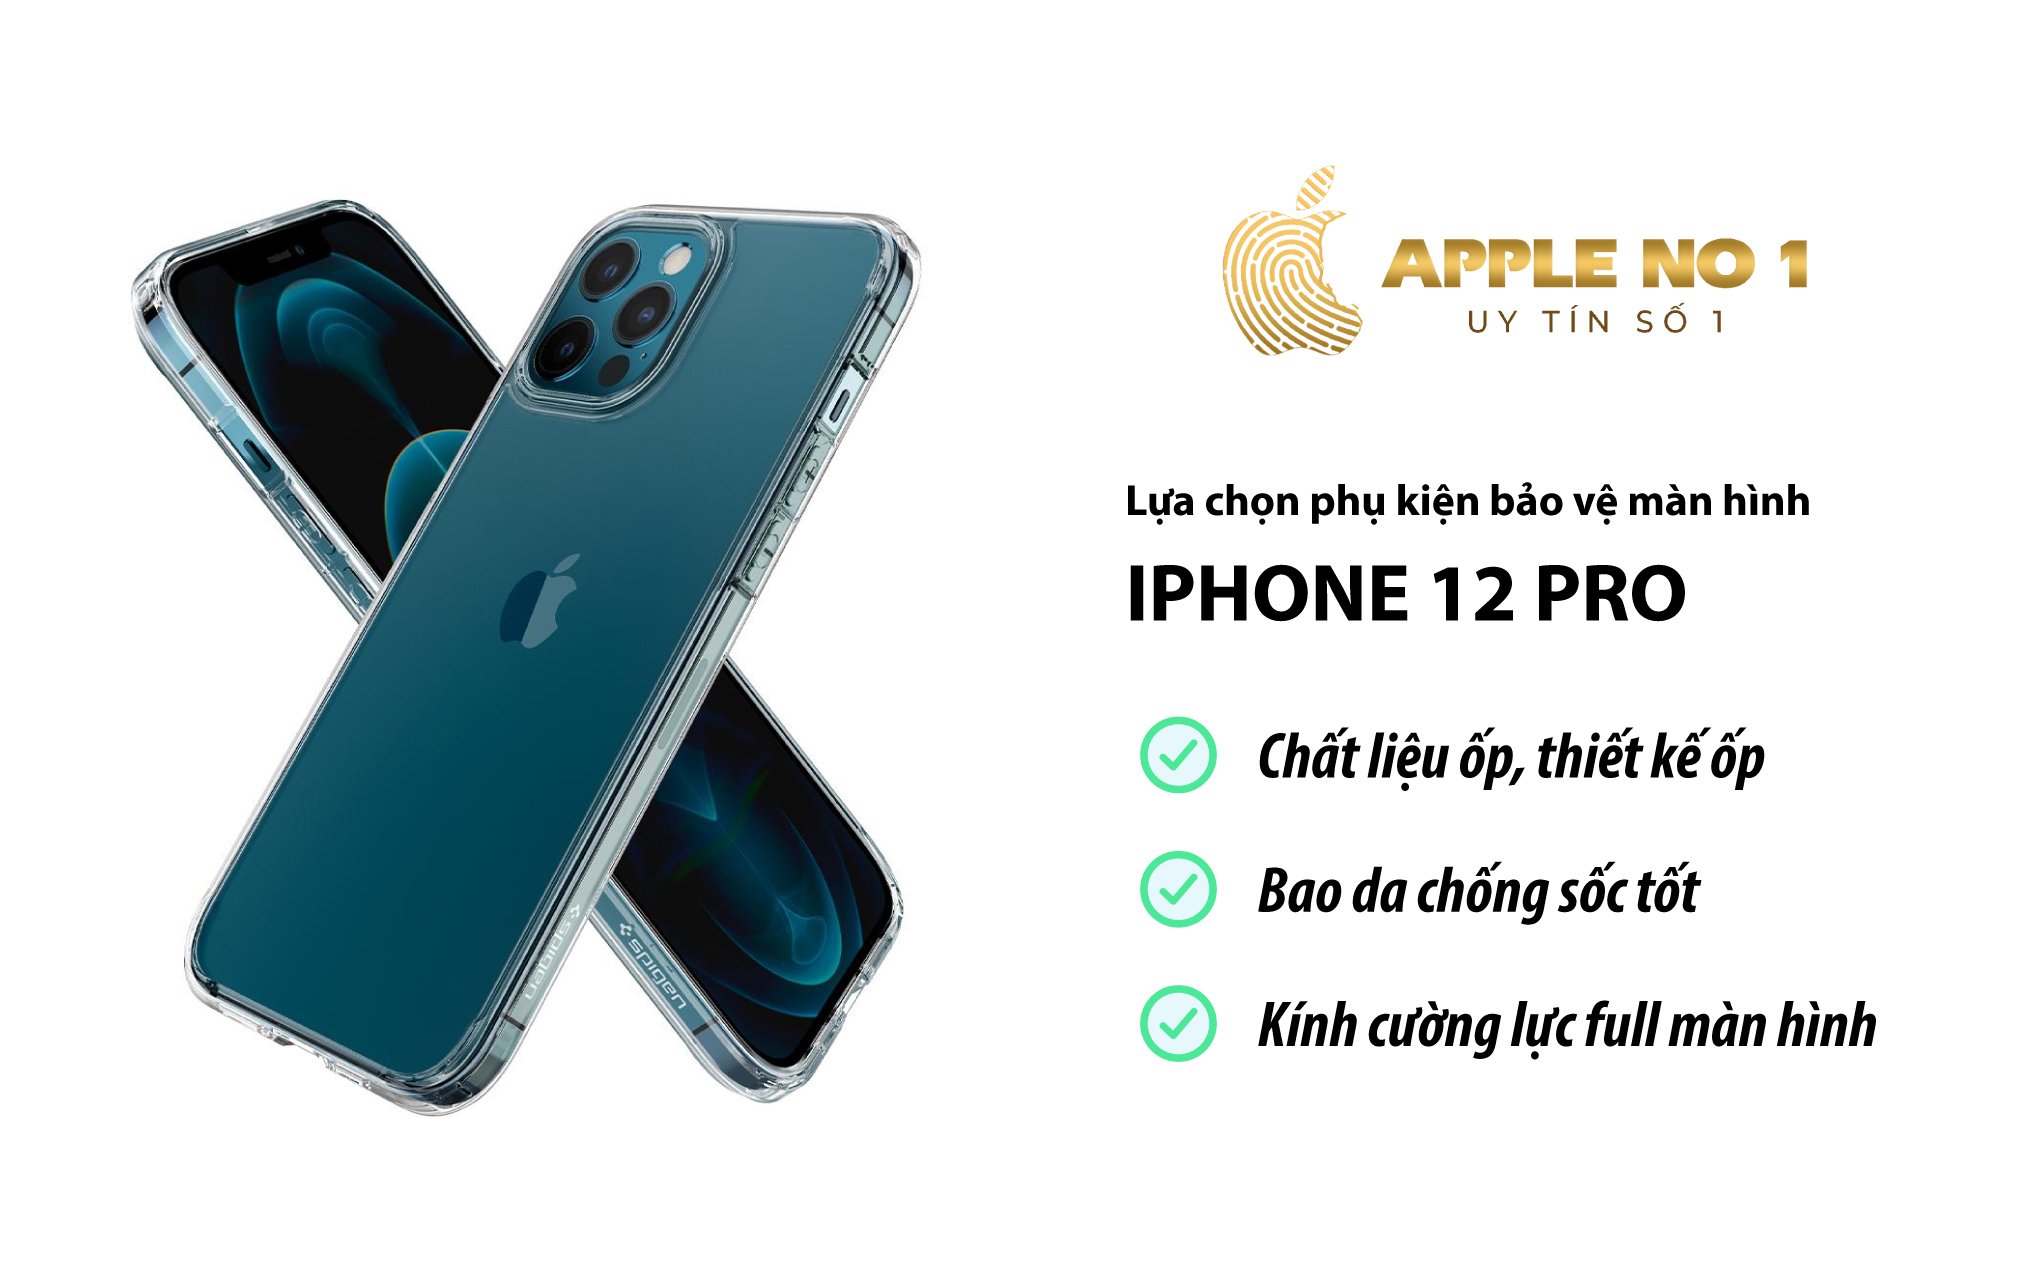 Chon phu kien phu hop de bao ve mat kinh iPhone 12 Pro?